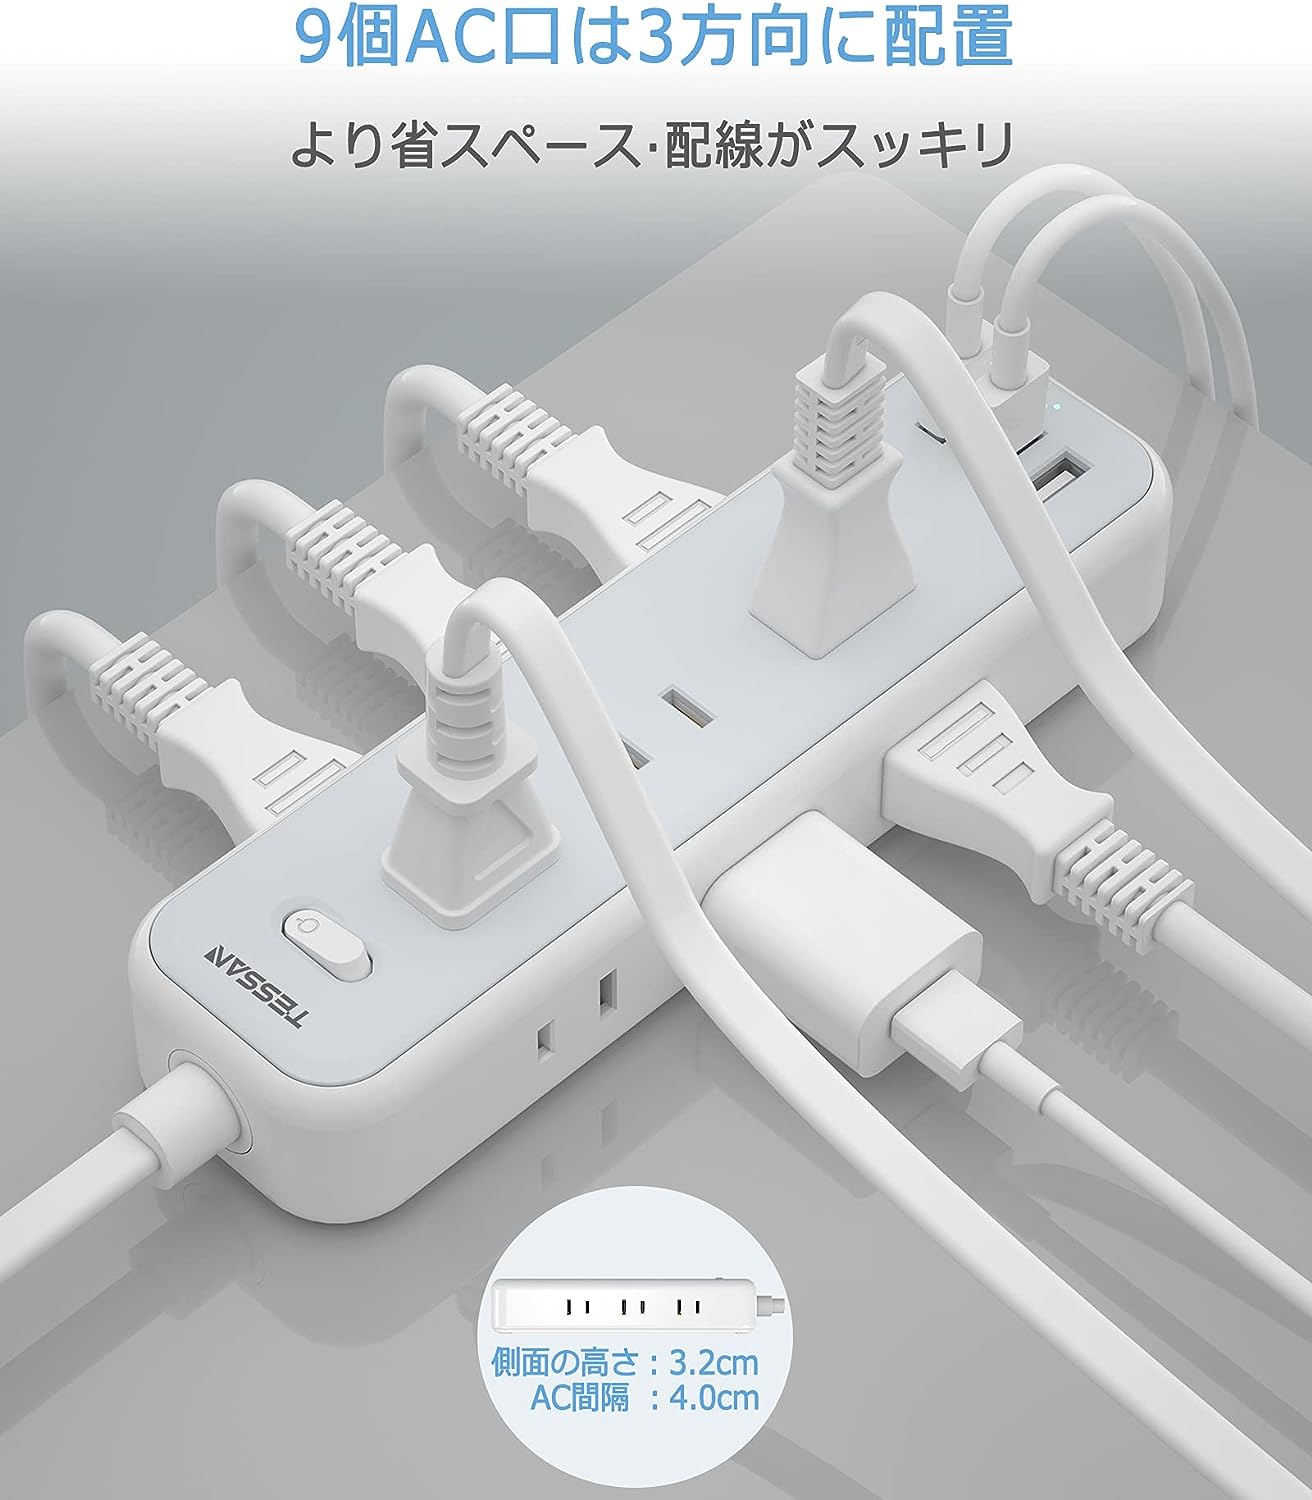 【新着商品】延長コード 2m 電源タップ usb コンセントタップ 9個AC口